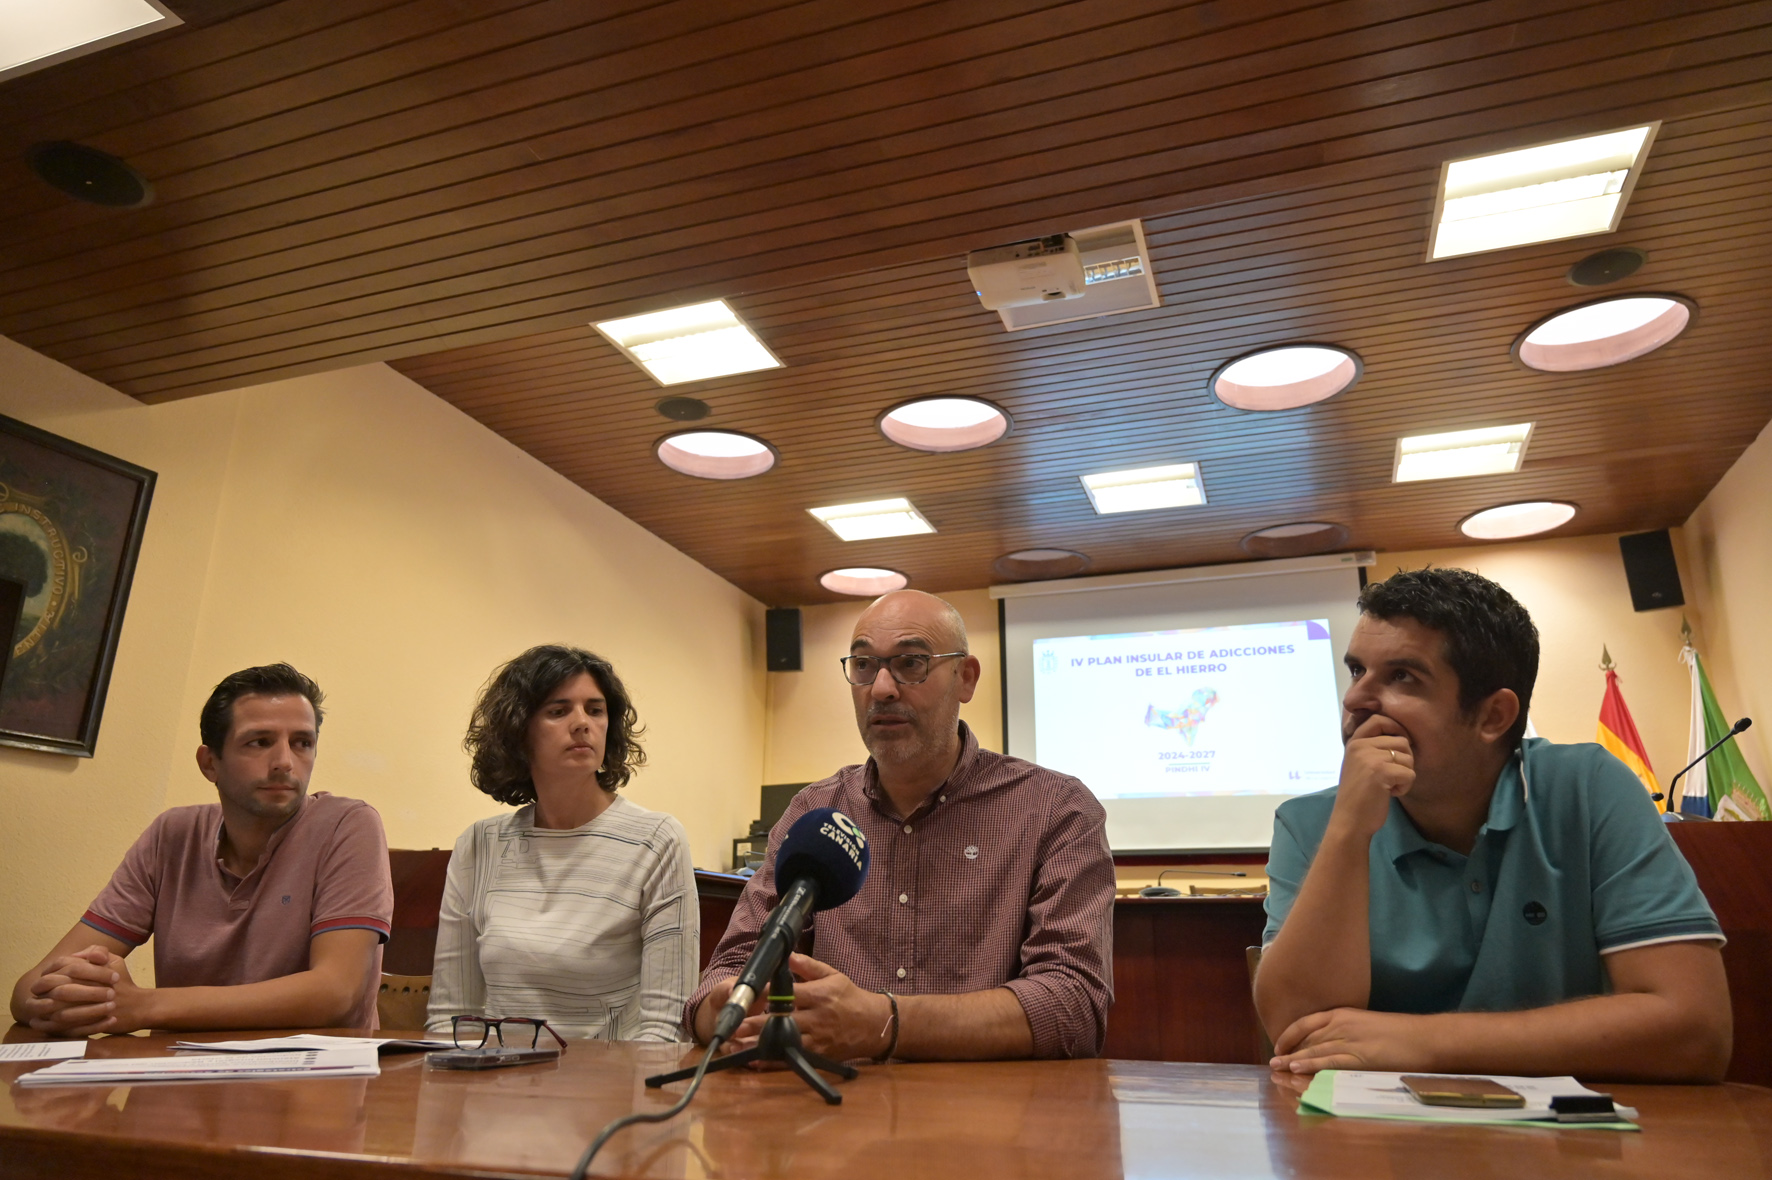 El Cabildo presenta el IV Plan Insular de Adicciones de El Hierro